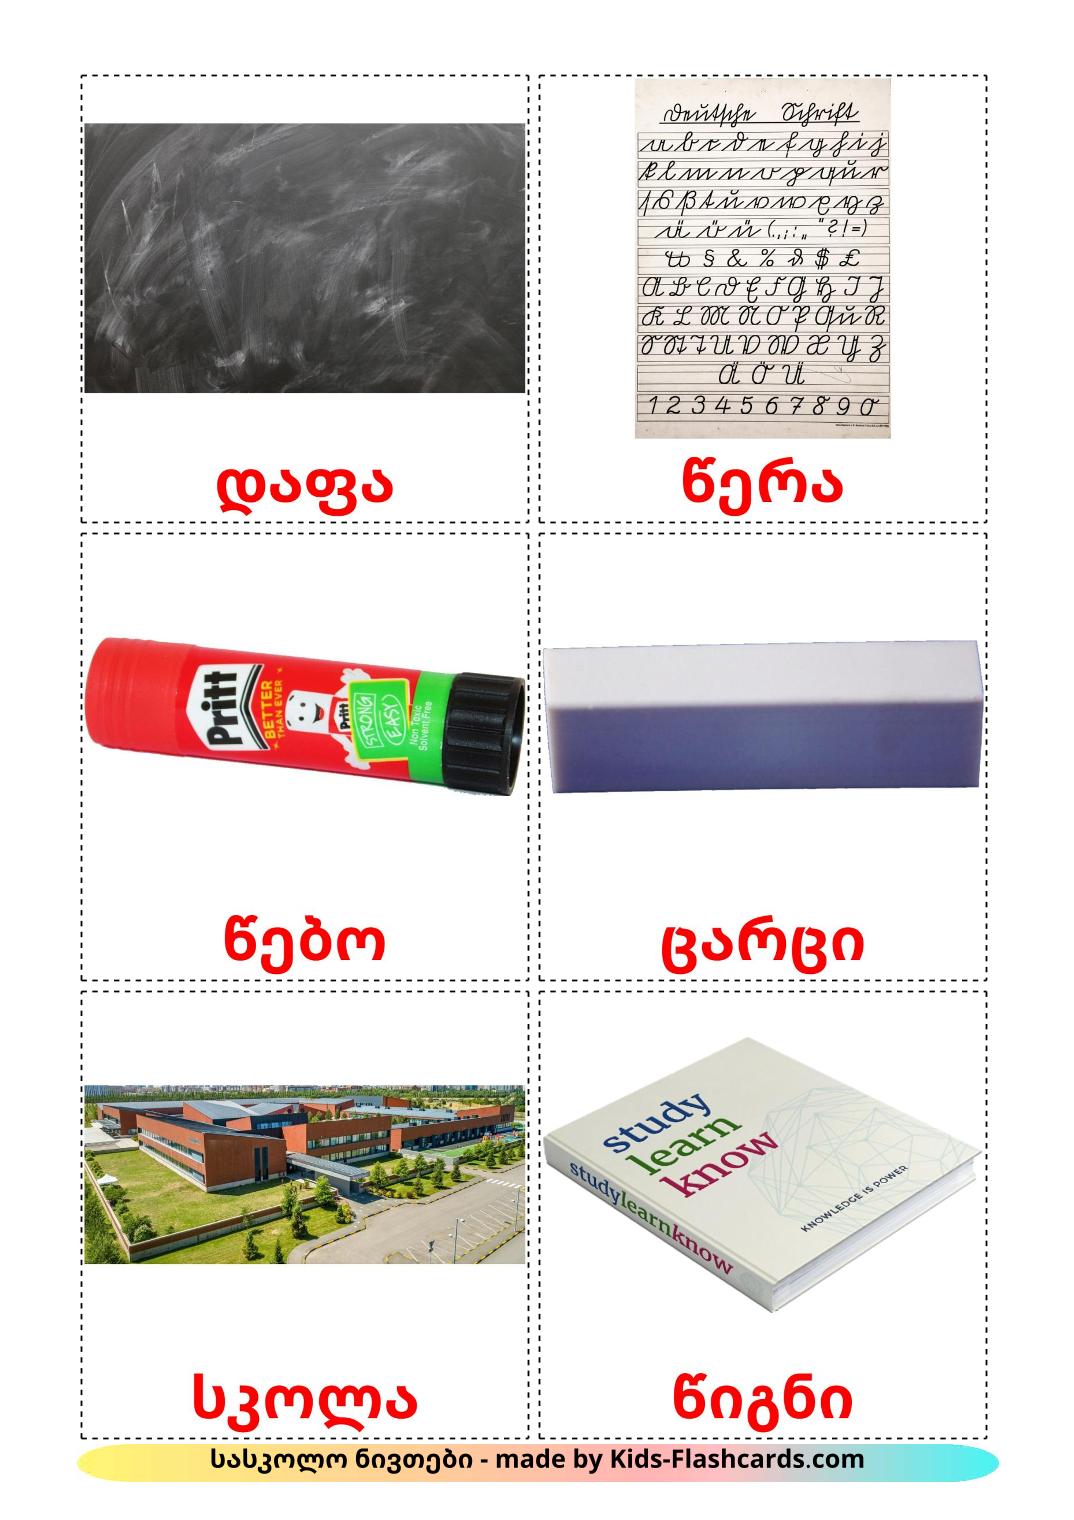 Objetos de sala de aula - 36 Flashcards georgianoes gratuitos para impressão